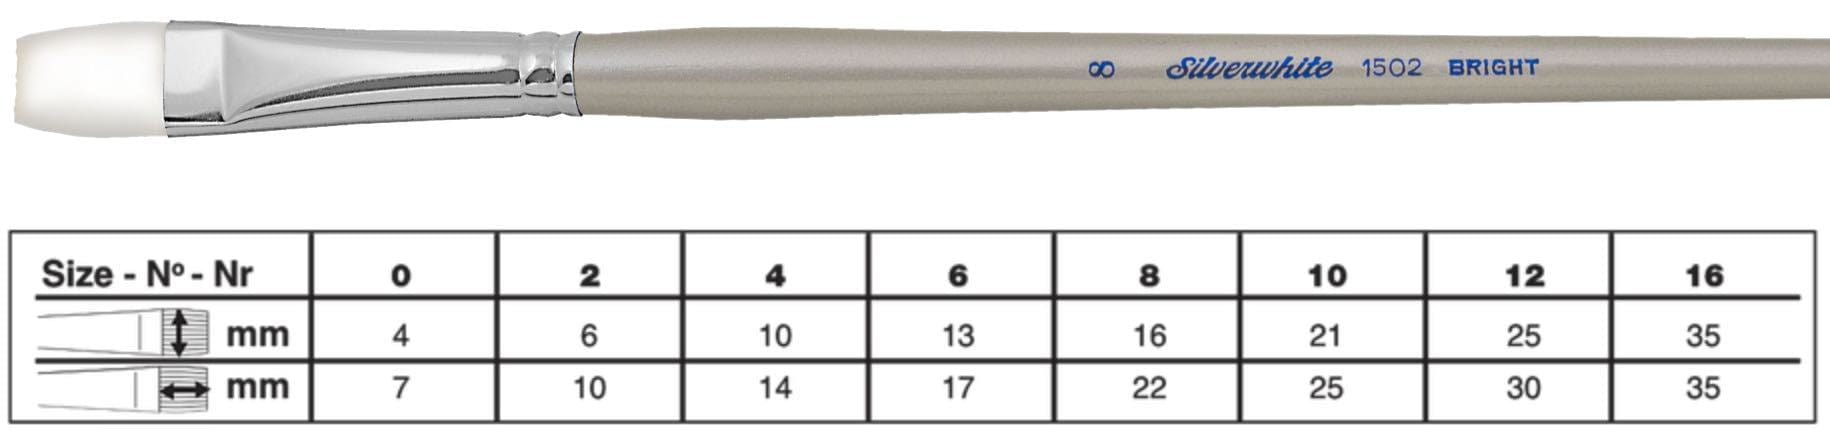 SILVER BRUSH SILVER BRUSH 12 (25mm x 30mm) Silver Brush 1502 Silverwhite Long Handle